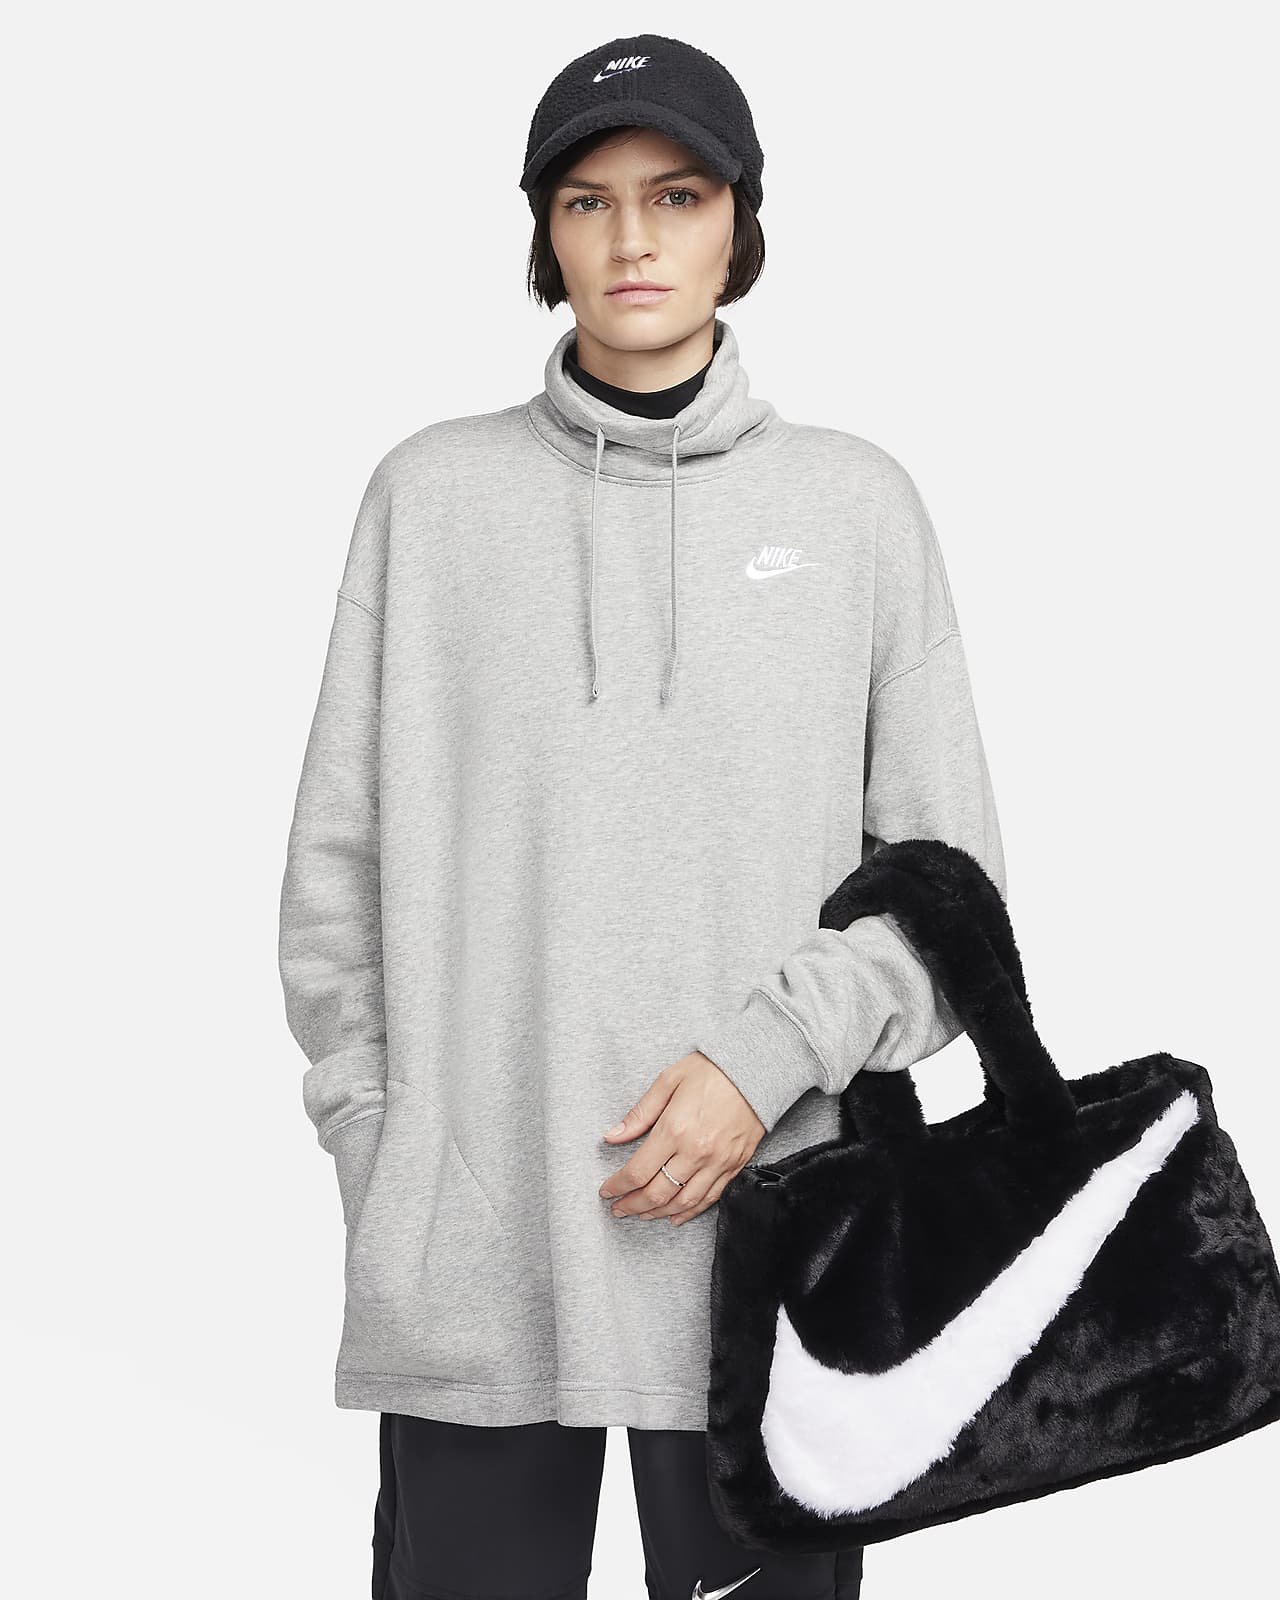 Torba ze sztucznego futra Nike Sportswear (10 l)